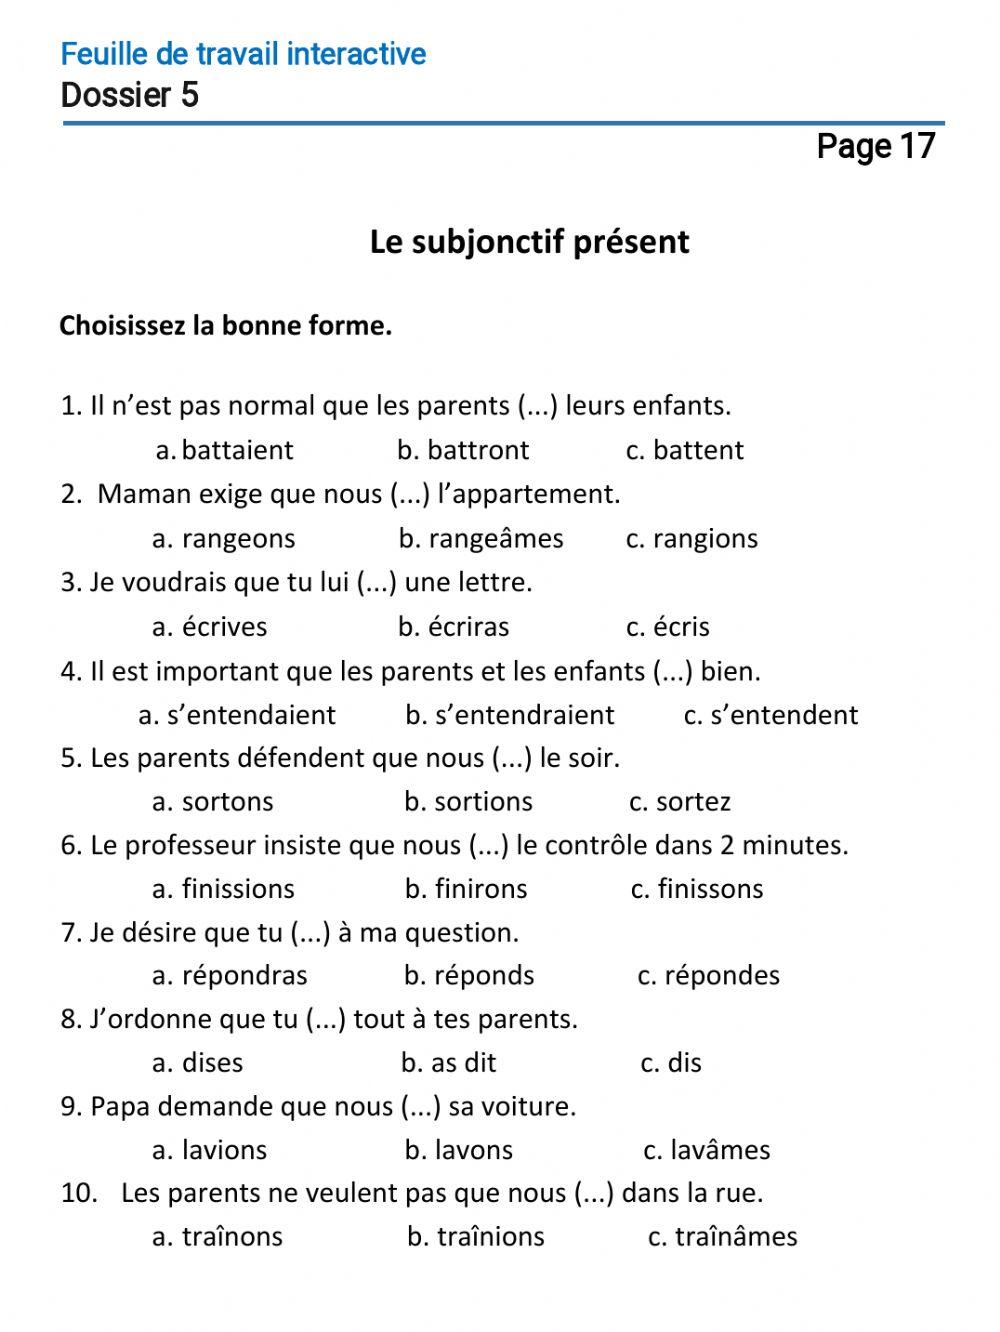 Le français-10 (повыш.)-Dossier 5-Page 17 (1)